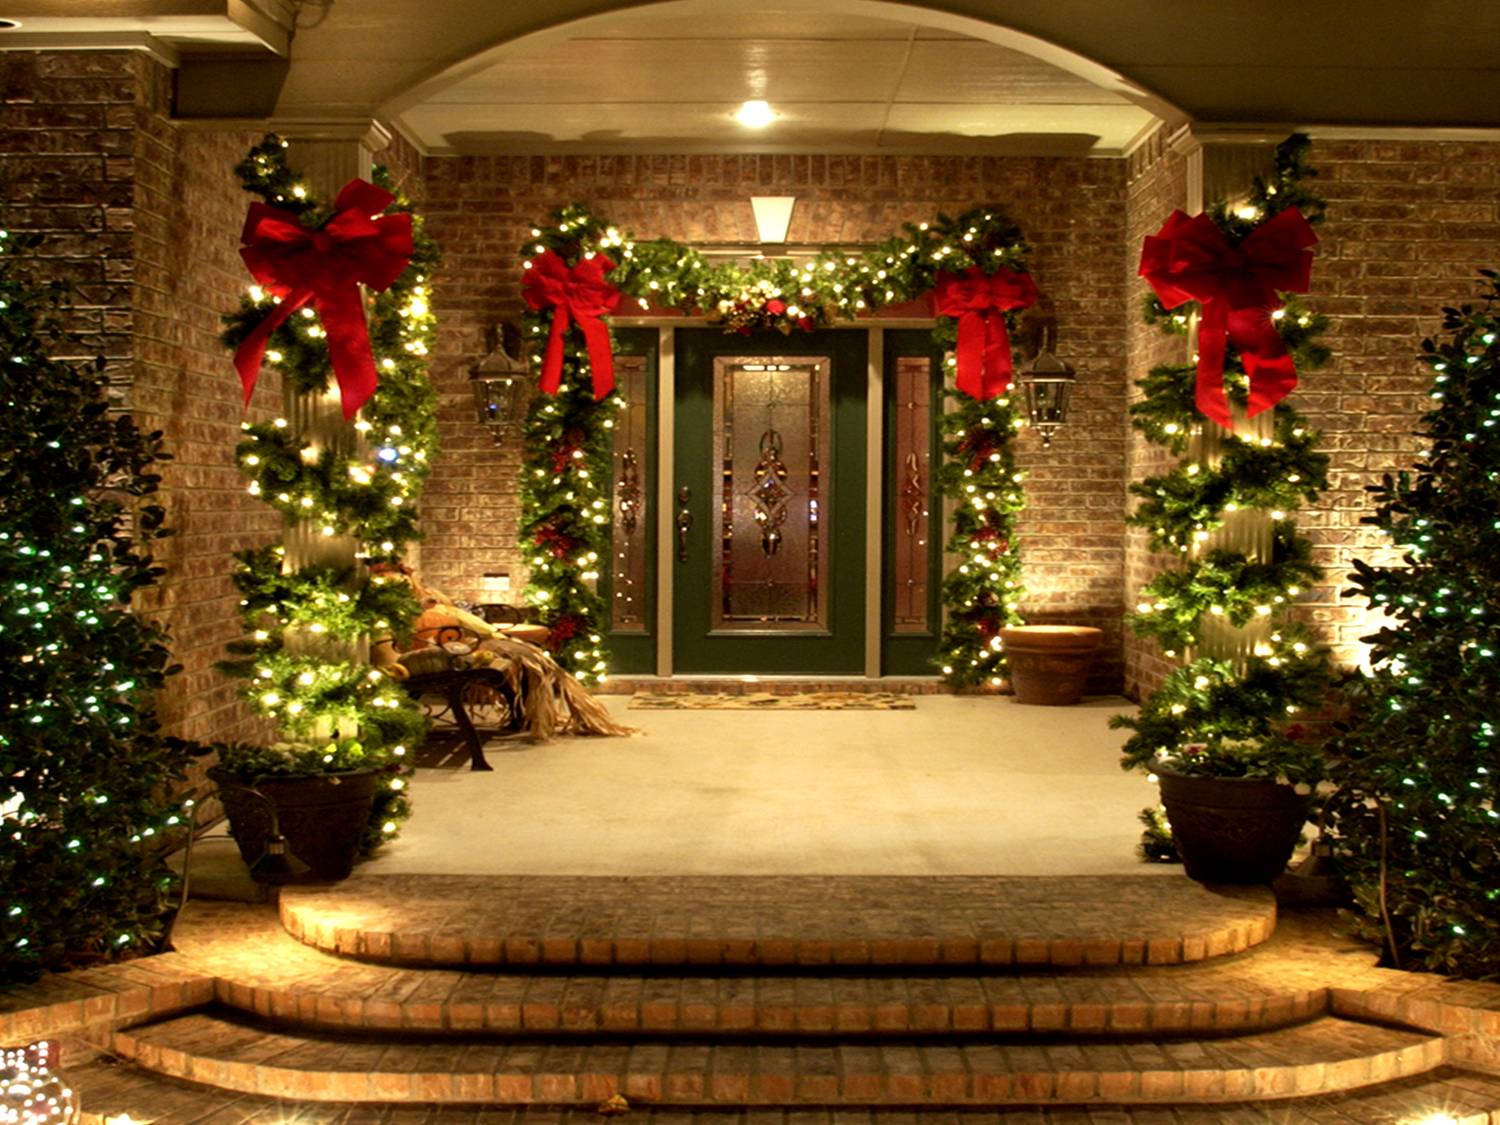 Home Christmas Decorations Home Design